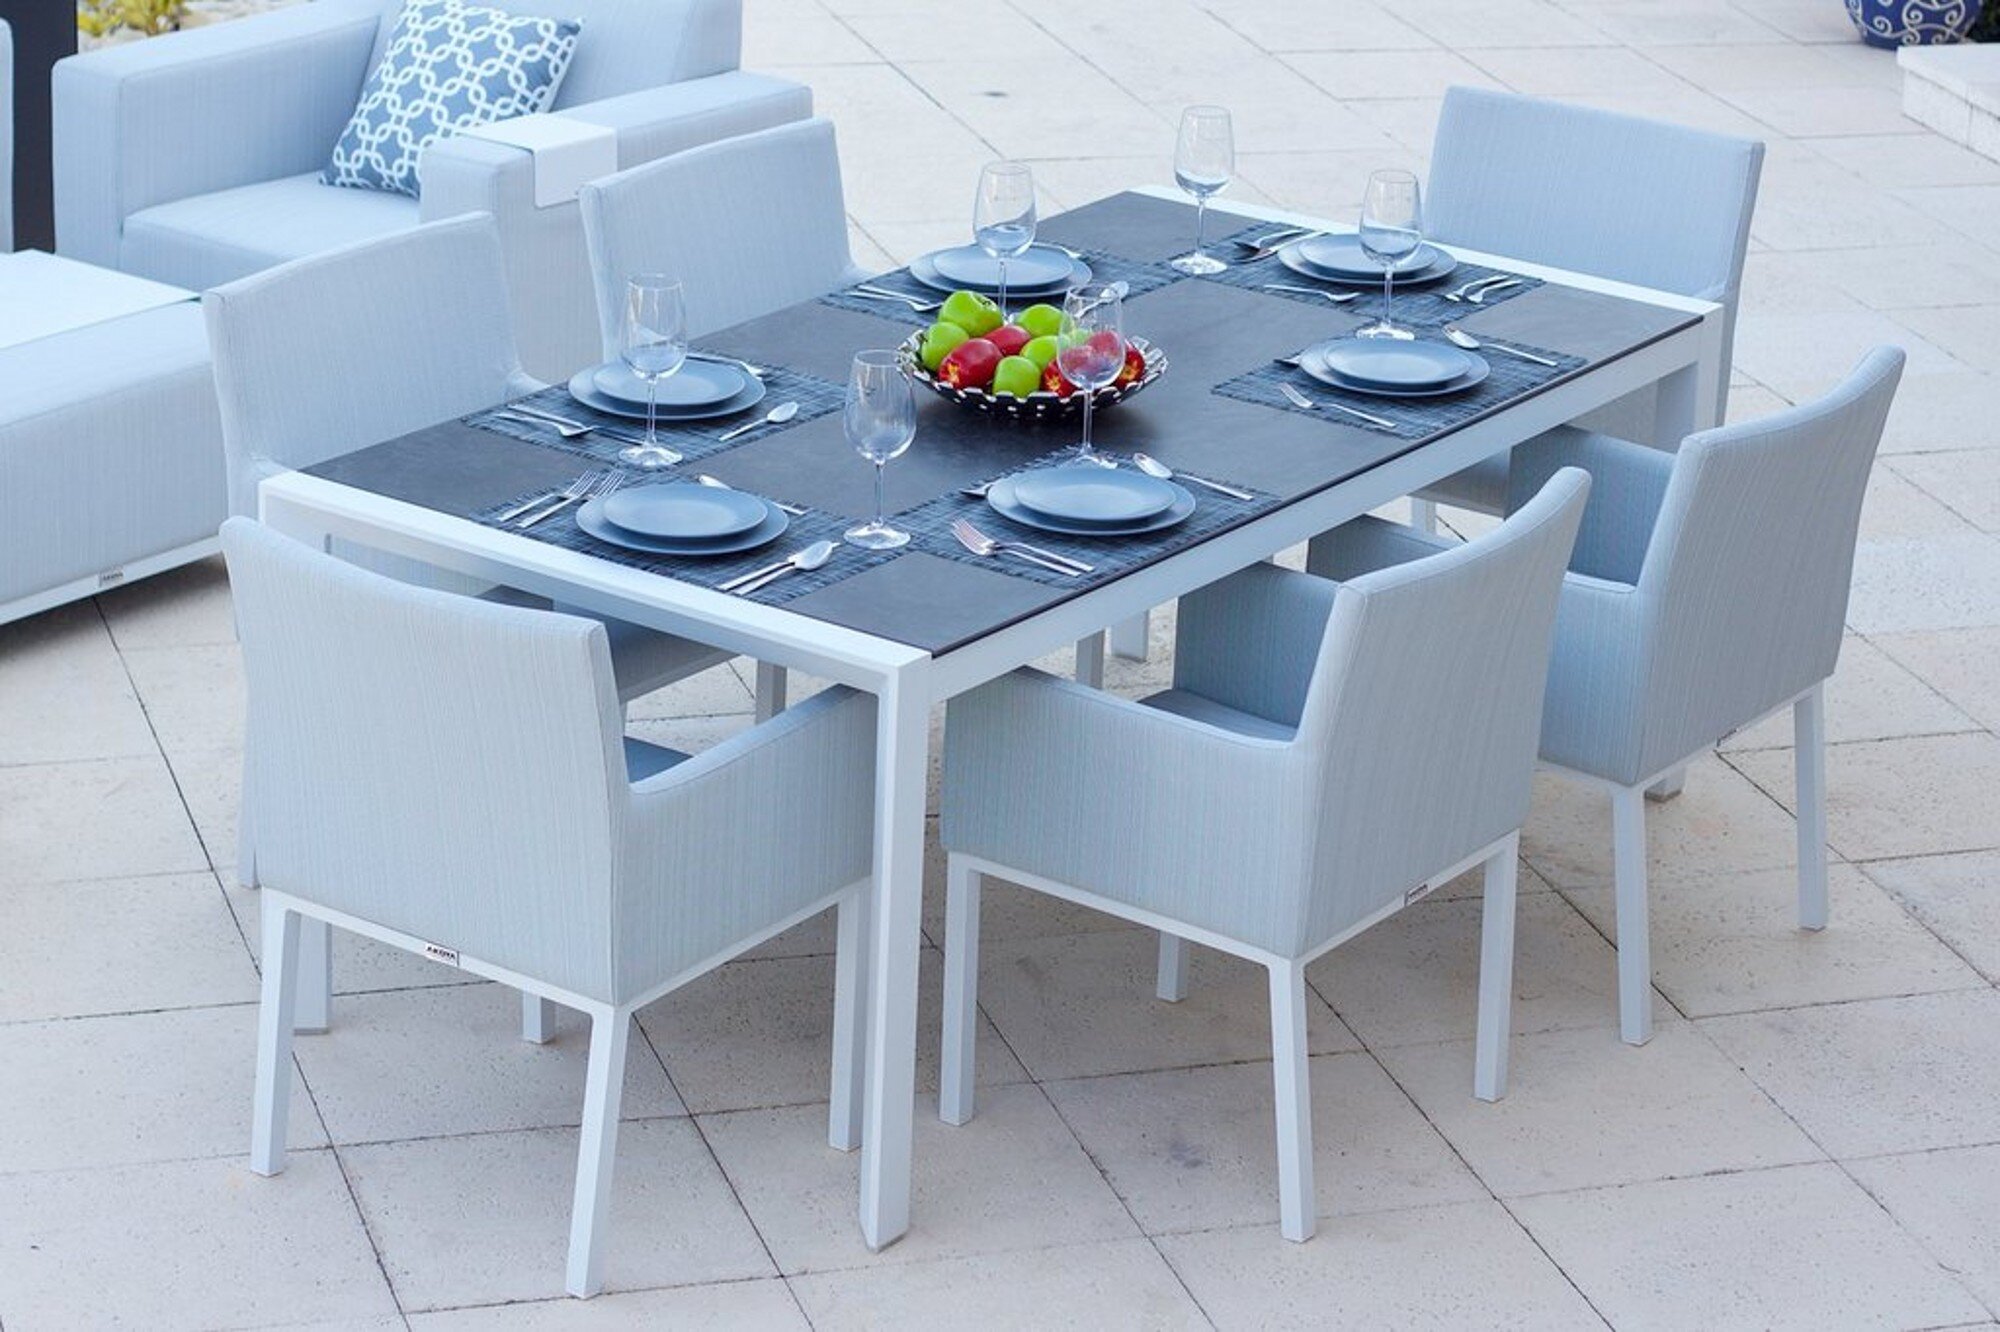 Belvedere Rectangular Dining Table in White Aluminum